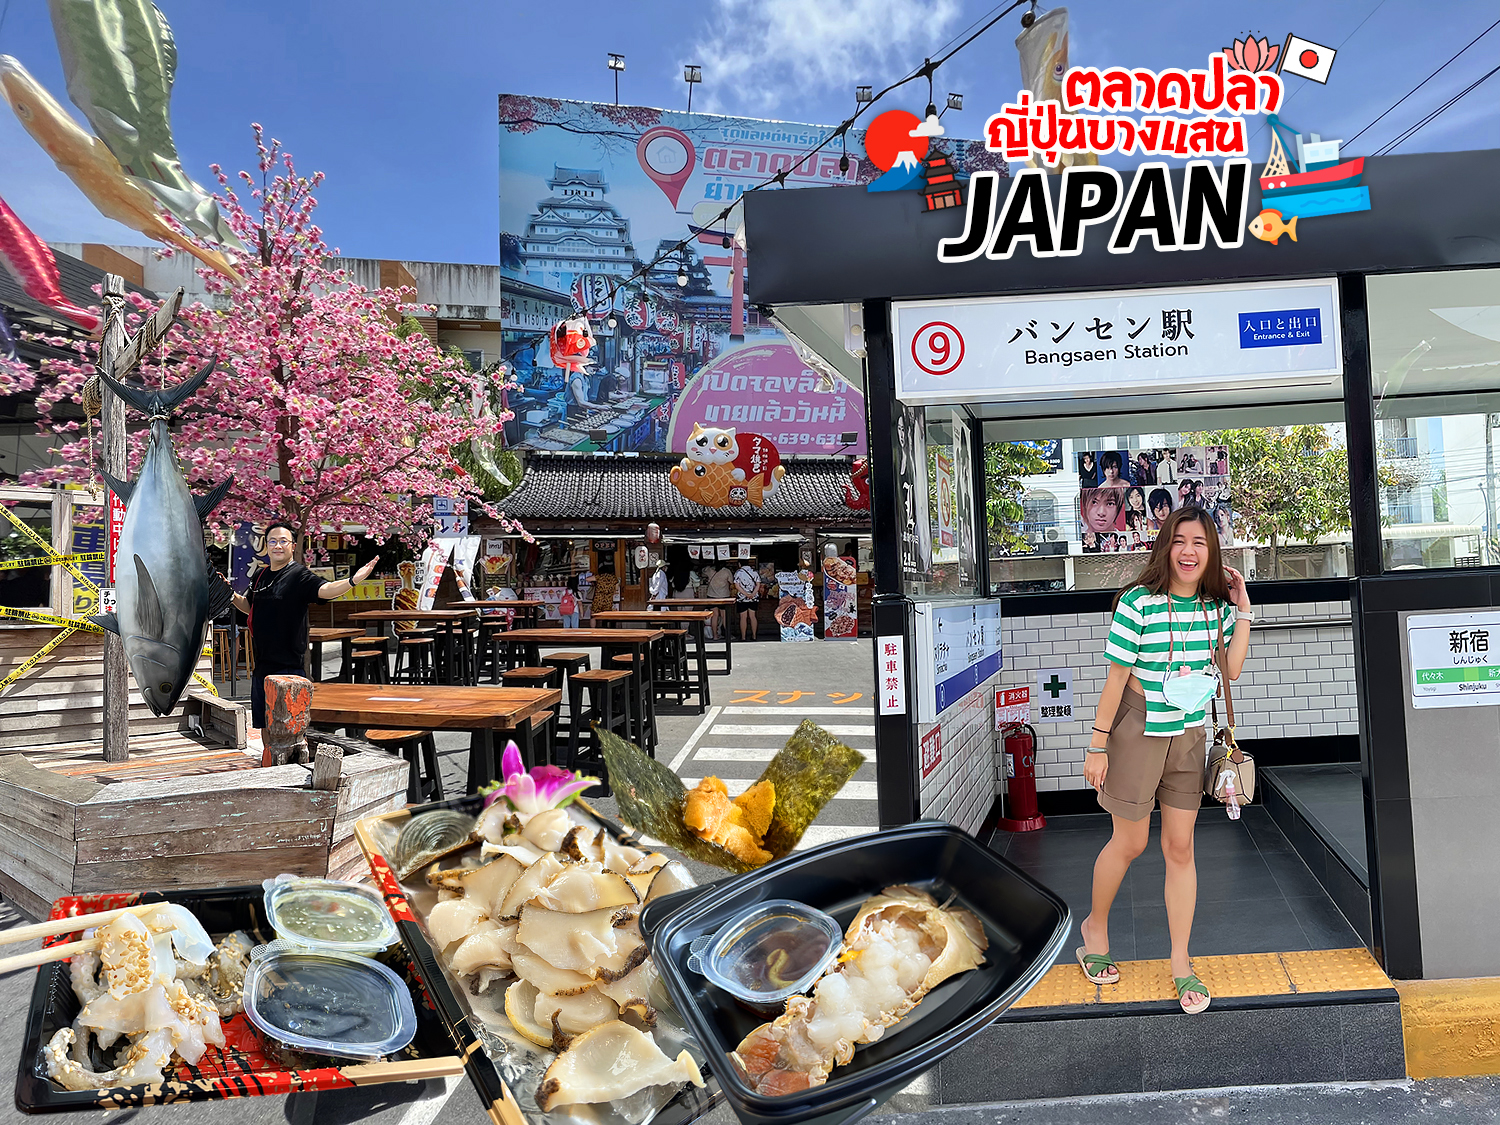 เที่ยวตลาดปลาญี่ปุ่น (บางแสน) กินซาชิมิทะเลไทย เป็นๆ สดๆ เนื้อหวาน ปลาหมึก  หอย ปลา ไข่หอยเม่น มีครบ หายคิดถึงญี่ปุ่นได้นิดนึง - ชิม ช็อป แชะ  แวะเที่ยวไปกับเรา www.Hello2Day.com เว็บไซต์ที่รวมรีวิวร้านอาหาร  สถานที่ท่องเที่ยว โรงแรม สายการบิน รถเช่า และ ...